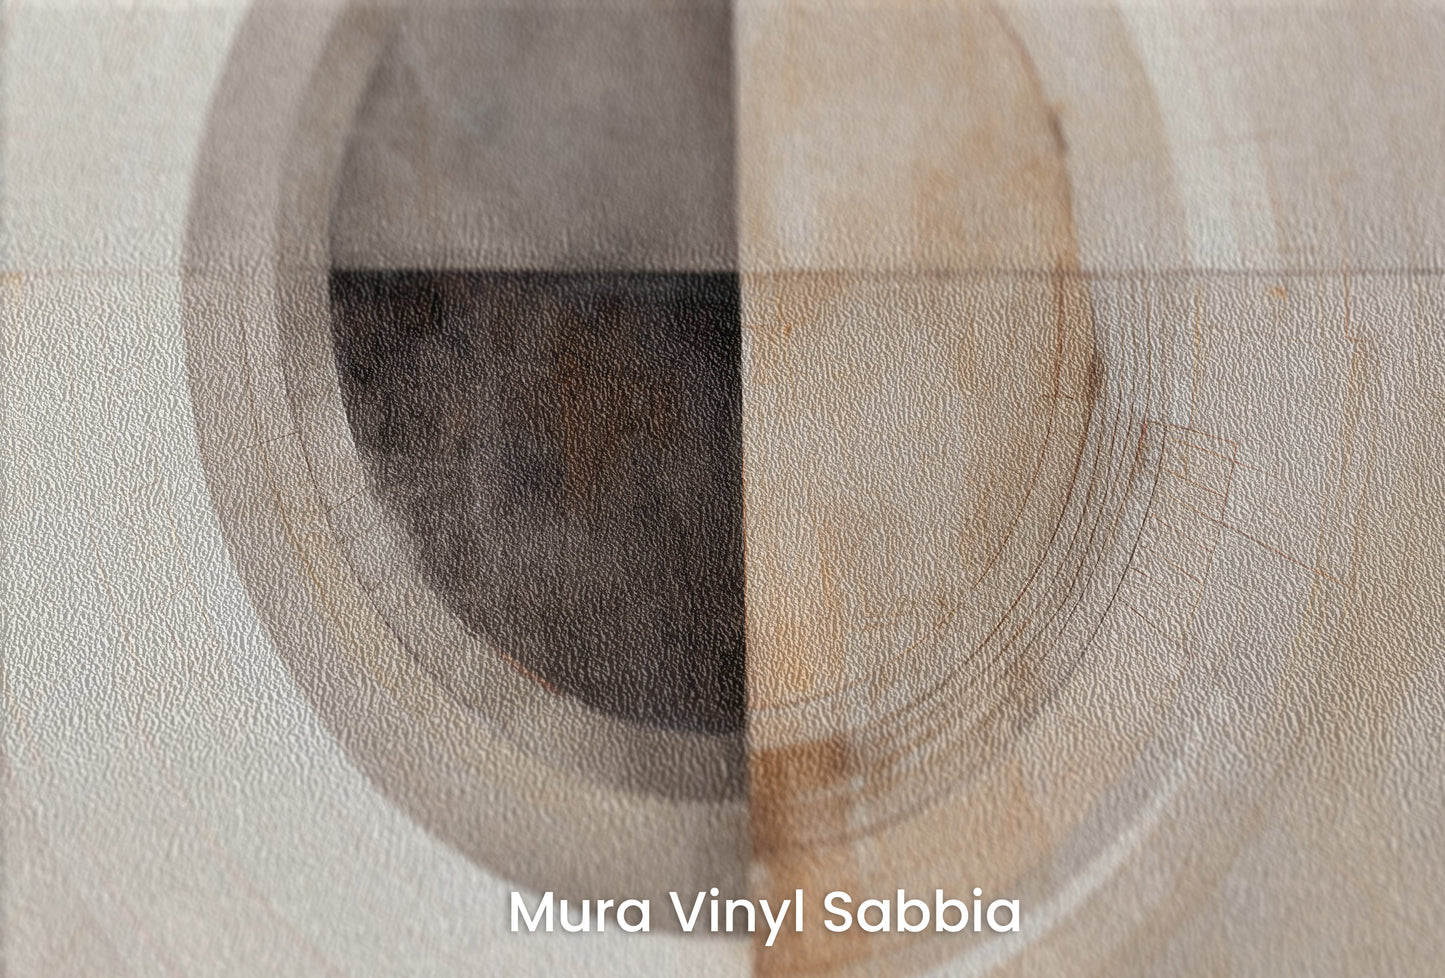 Zbliżenie na artystyczną fototapetę o nazwie MONOCHROME ECLIPSE ABSTRACTION #2 na podłożu Mura Vinyl Sabbia struktura grubego ziarna piasku.